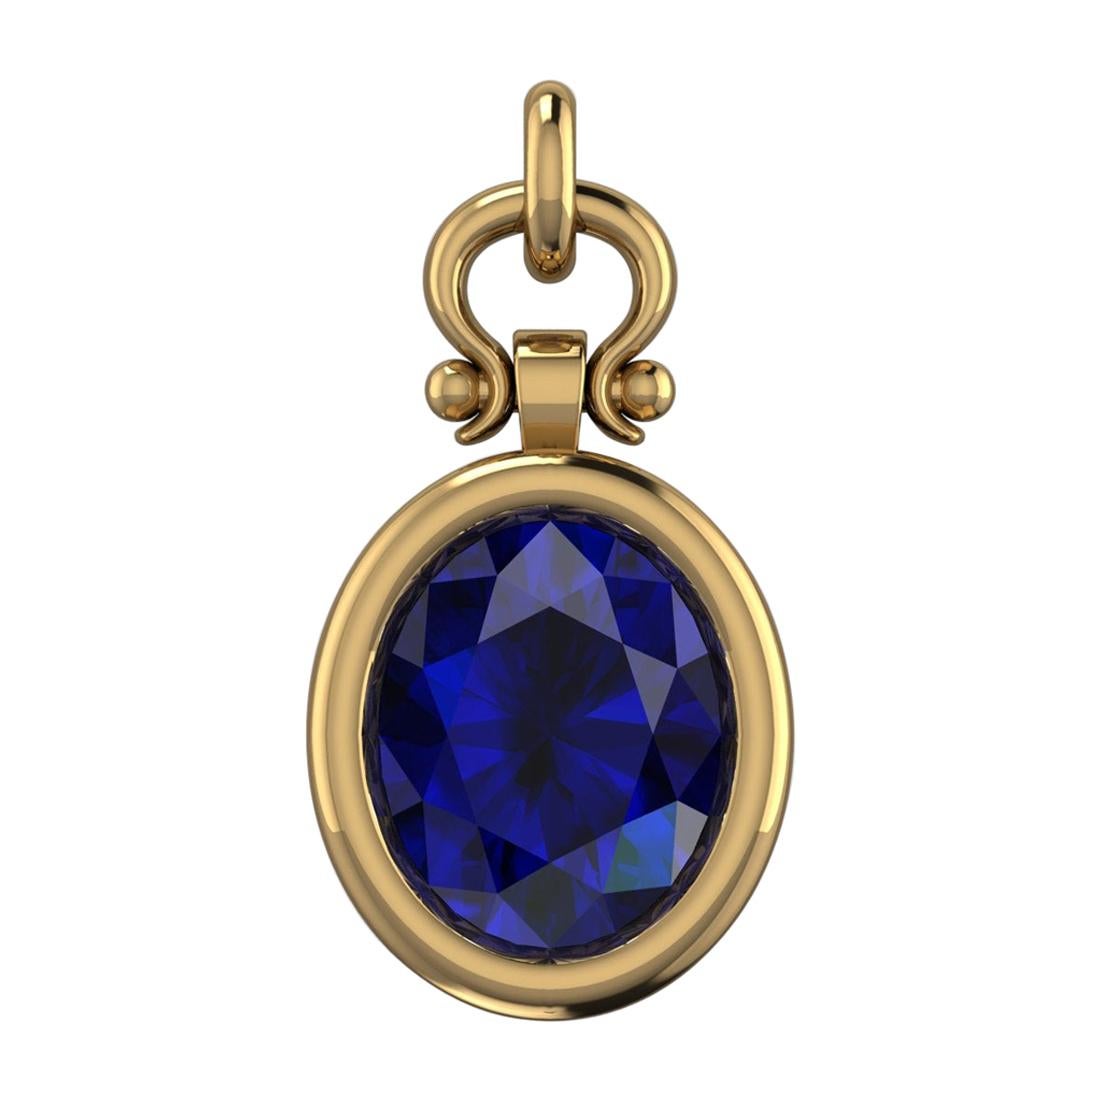 Collier pendentif personnalisé en or 18 carats avec saphir bleu taille ovale de 3,09 carats